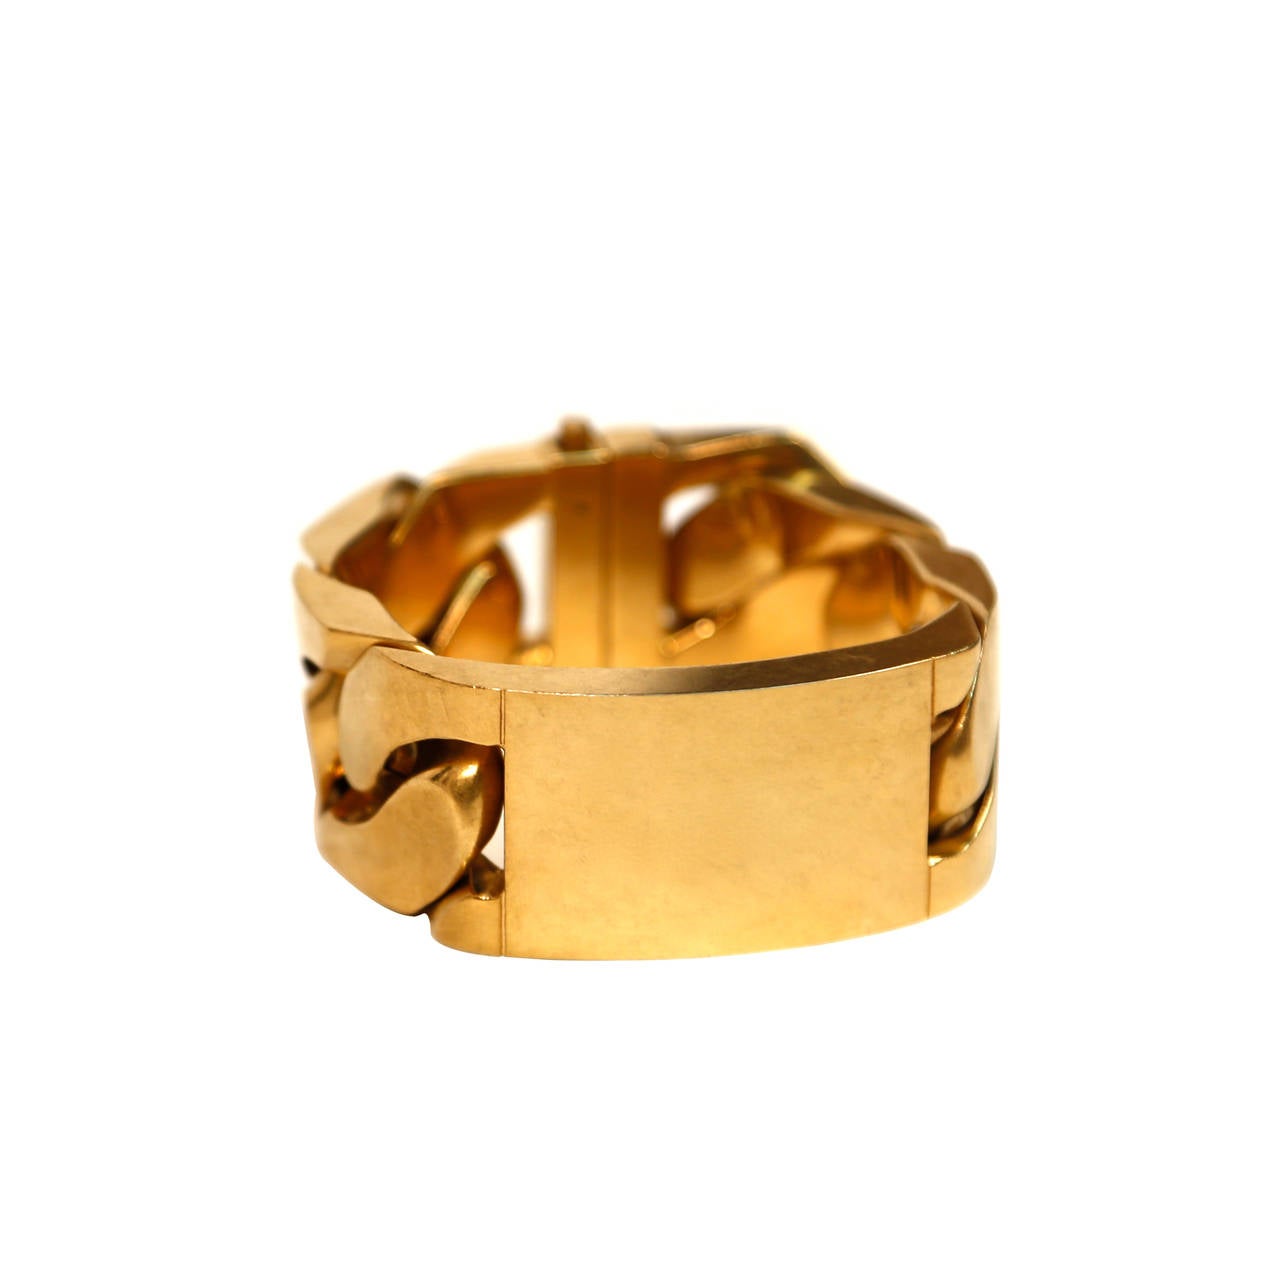 CELINE by Phoebe Philo chunky gold link ID bracelet